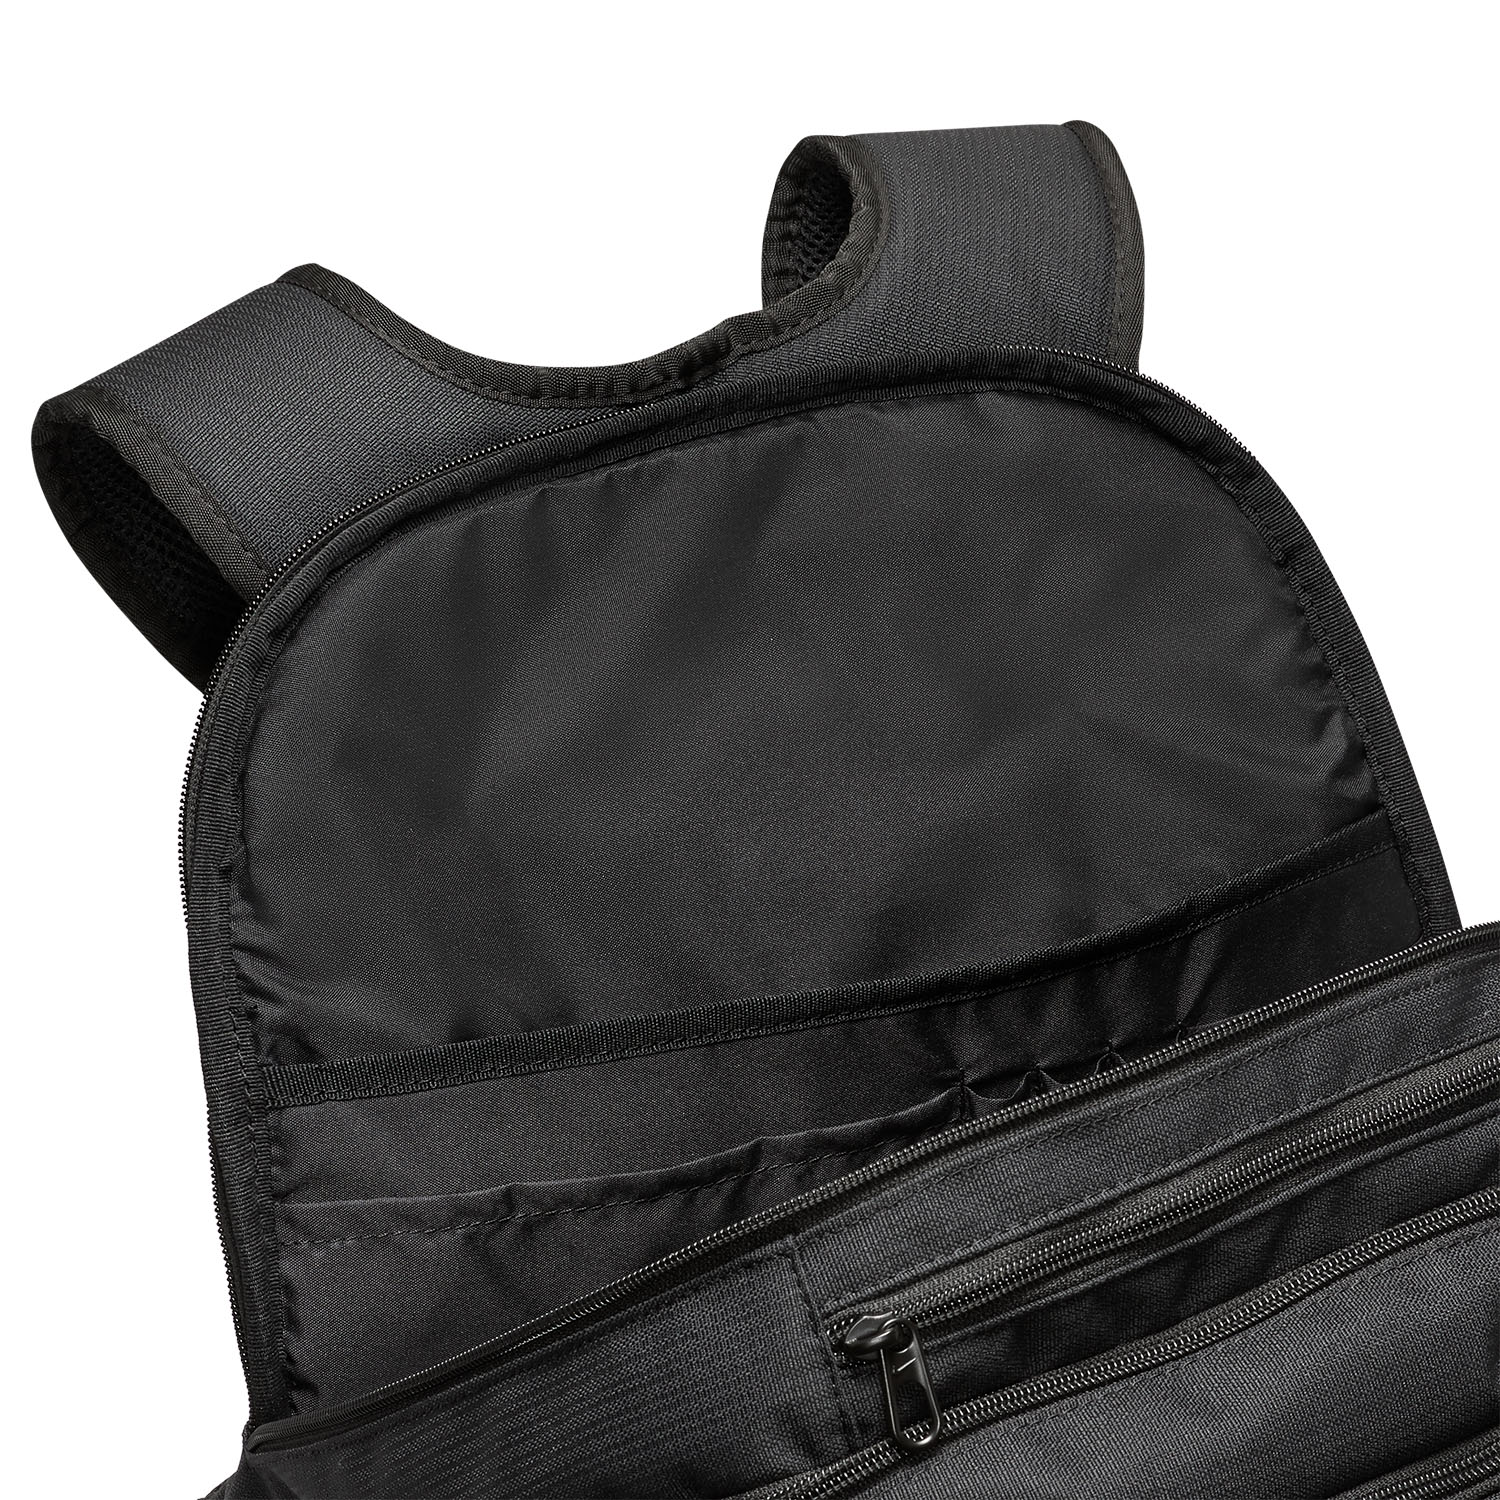 Nike Brasilia 9.5 Big Backpack - Black/White